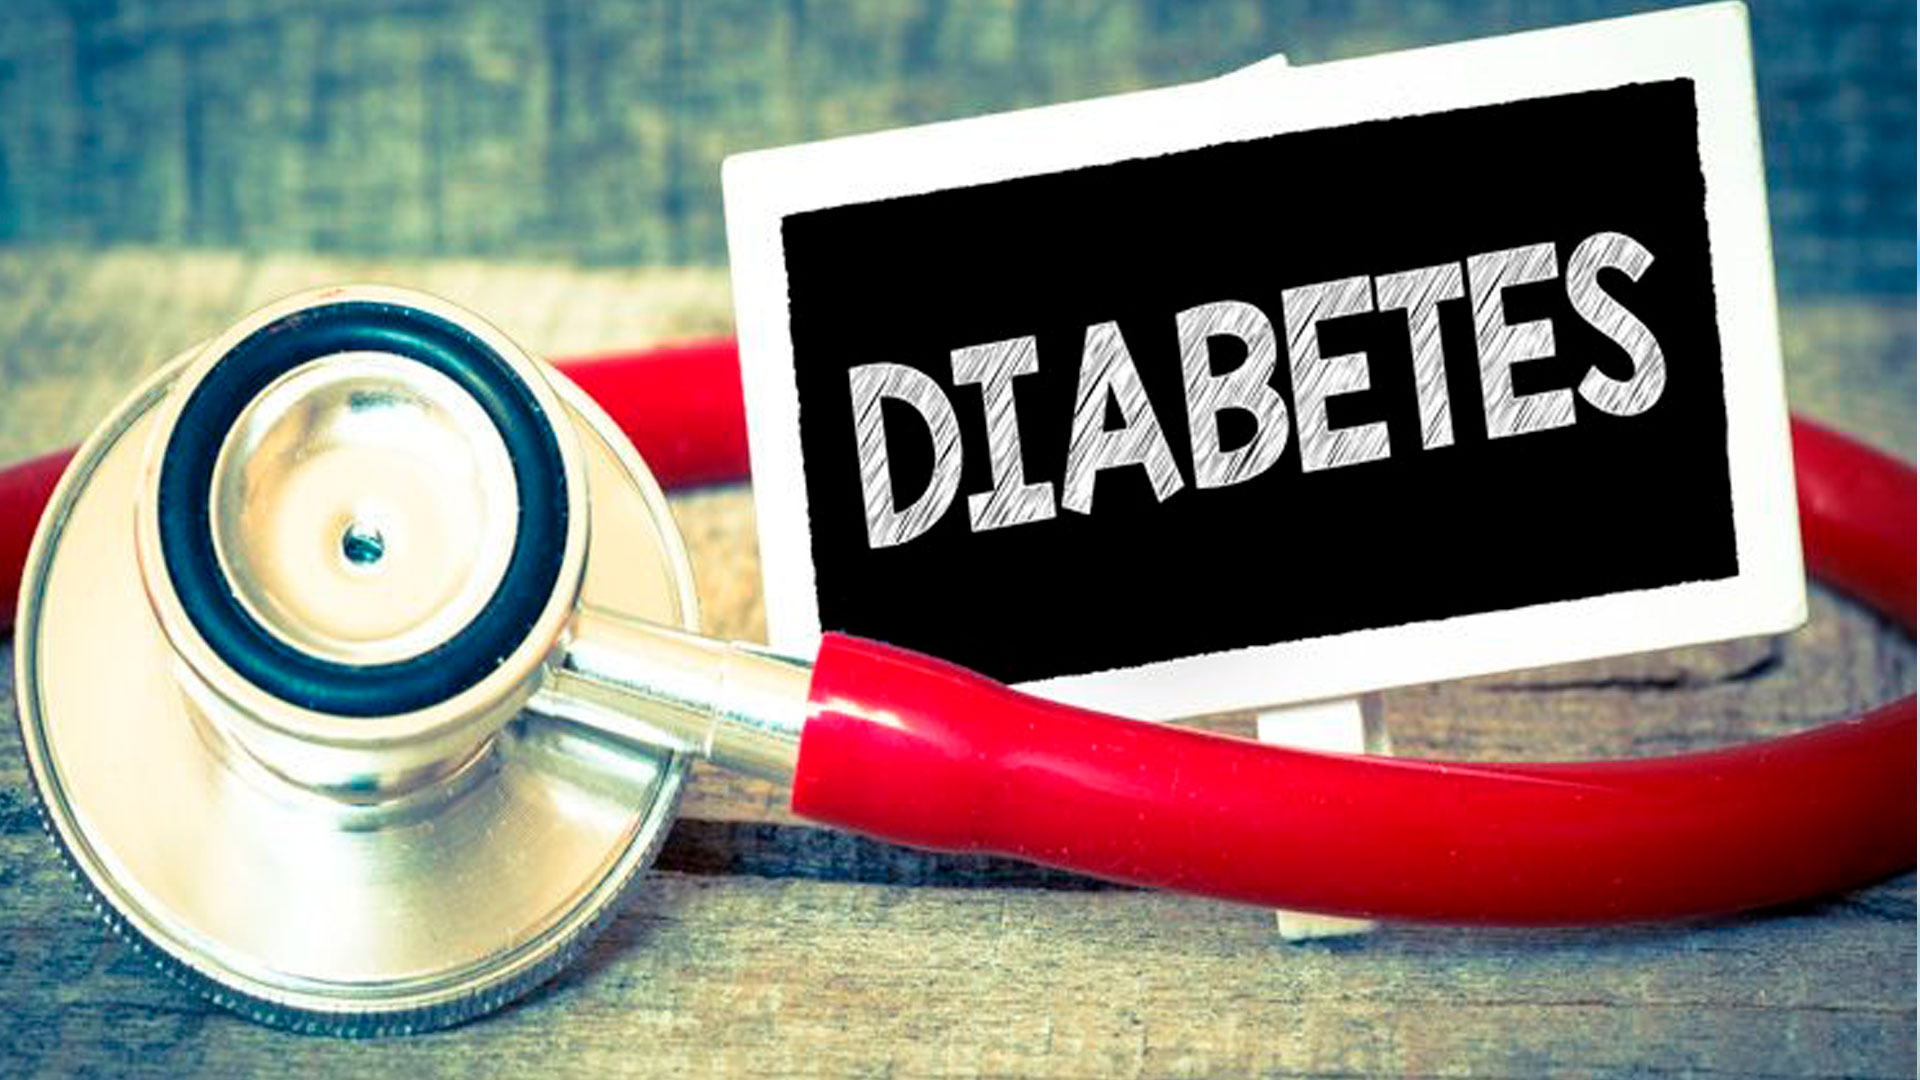 Diabete di tipo 2 e deterioramento cognitivo, maggior rischio di eventi avversi cardiovascolari